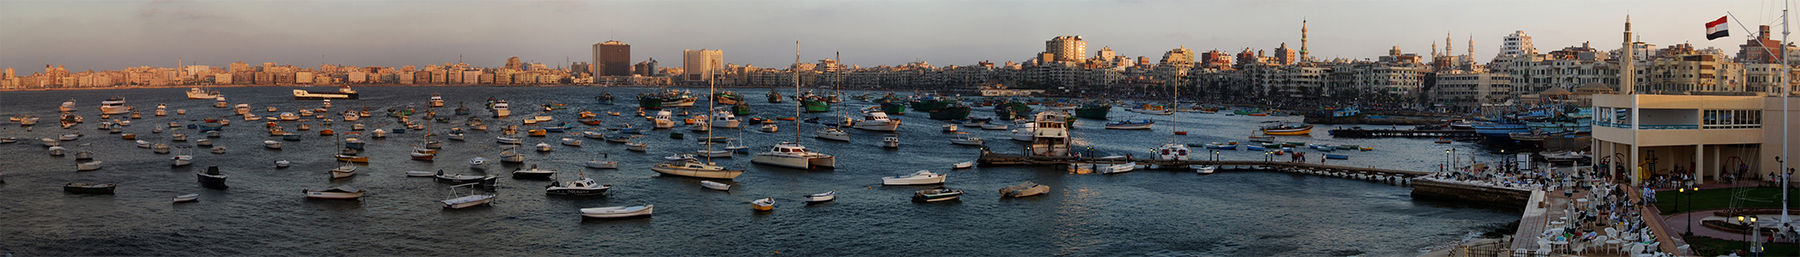 Alexandria havnebanner.jpg